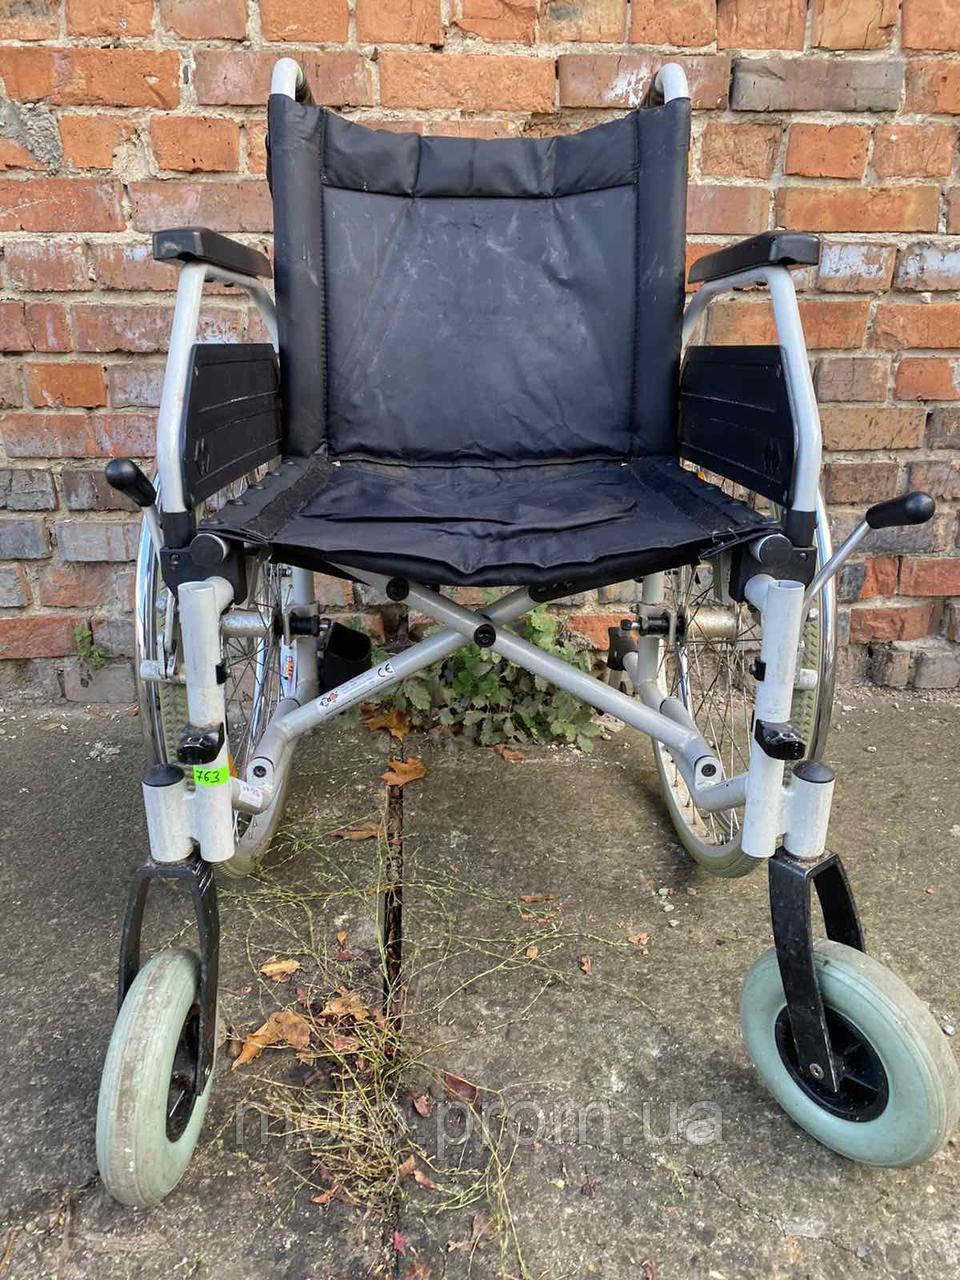 Широка інвалідна коляска Mesteca без підніжок ширина сидіння 48 см б/у без підніжок, фото 1